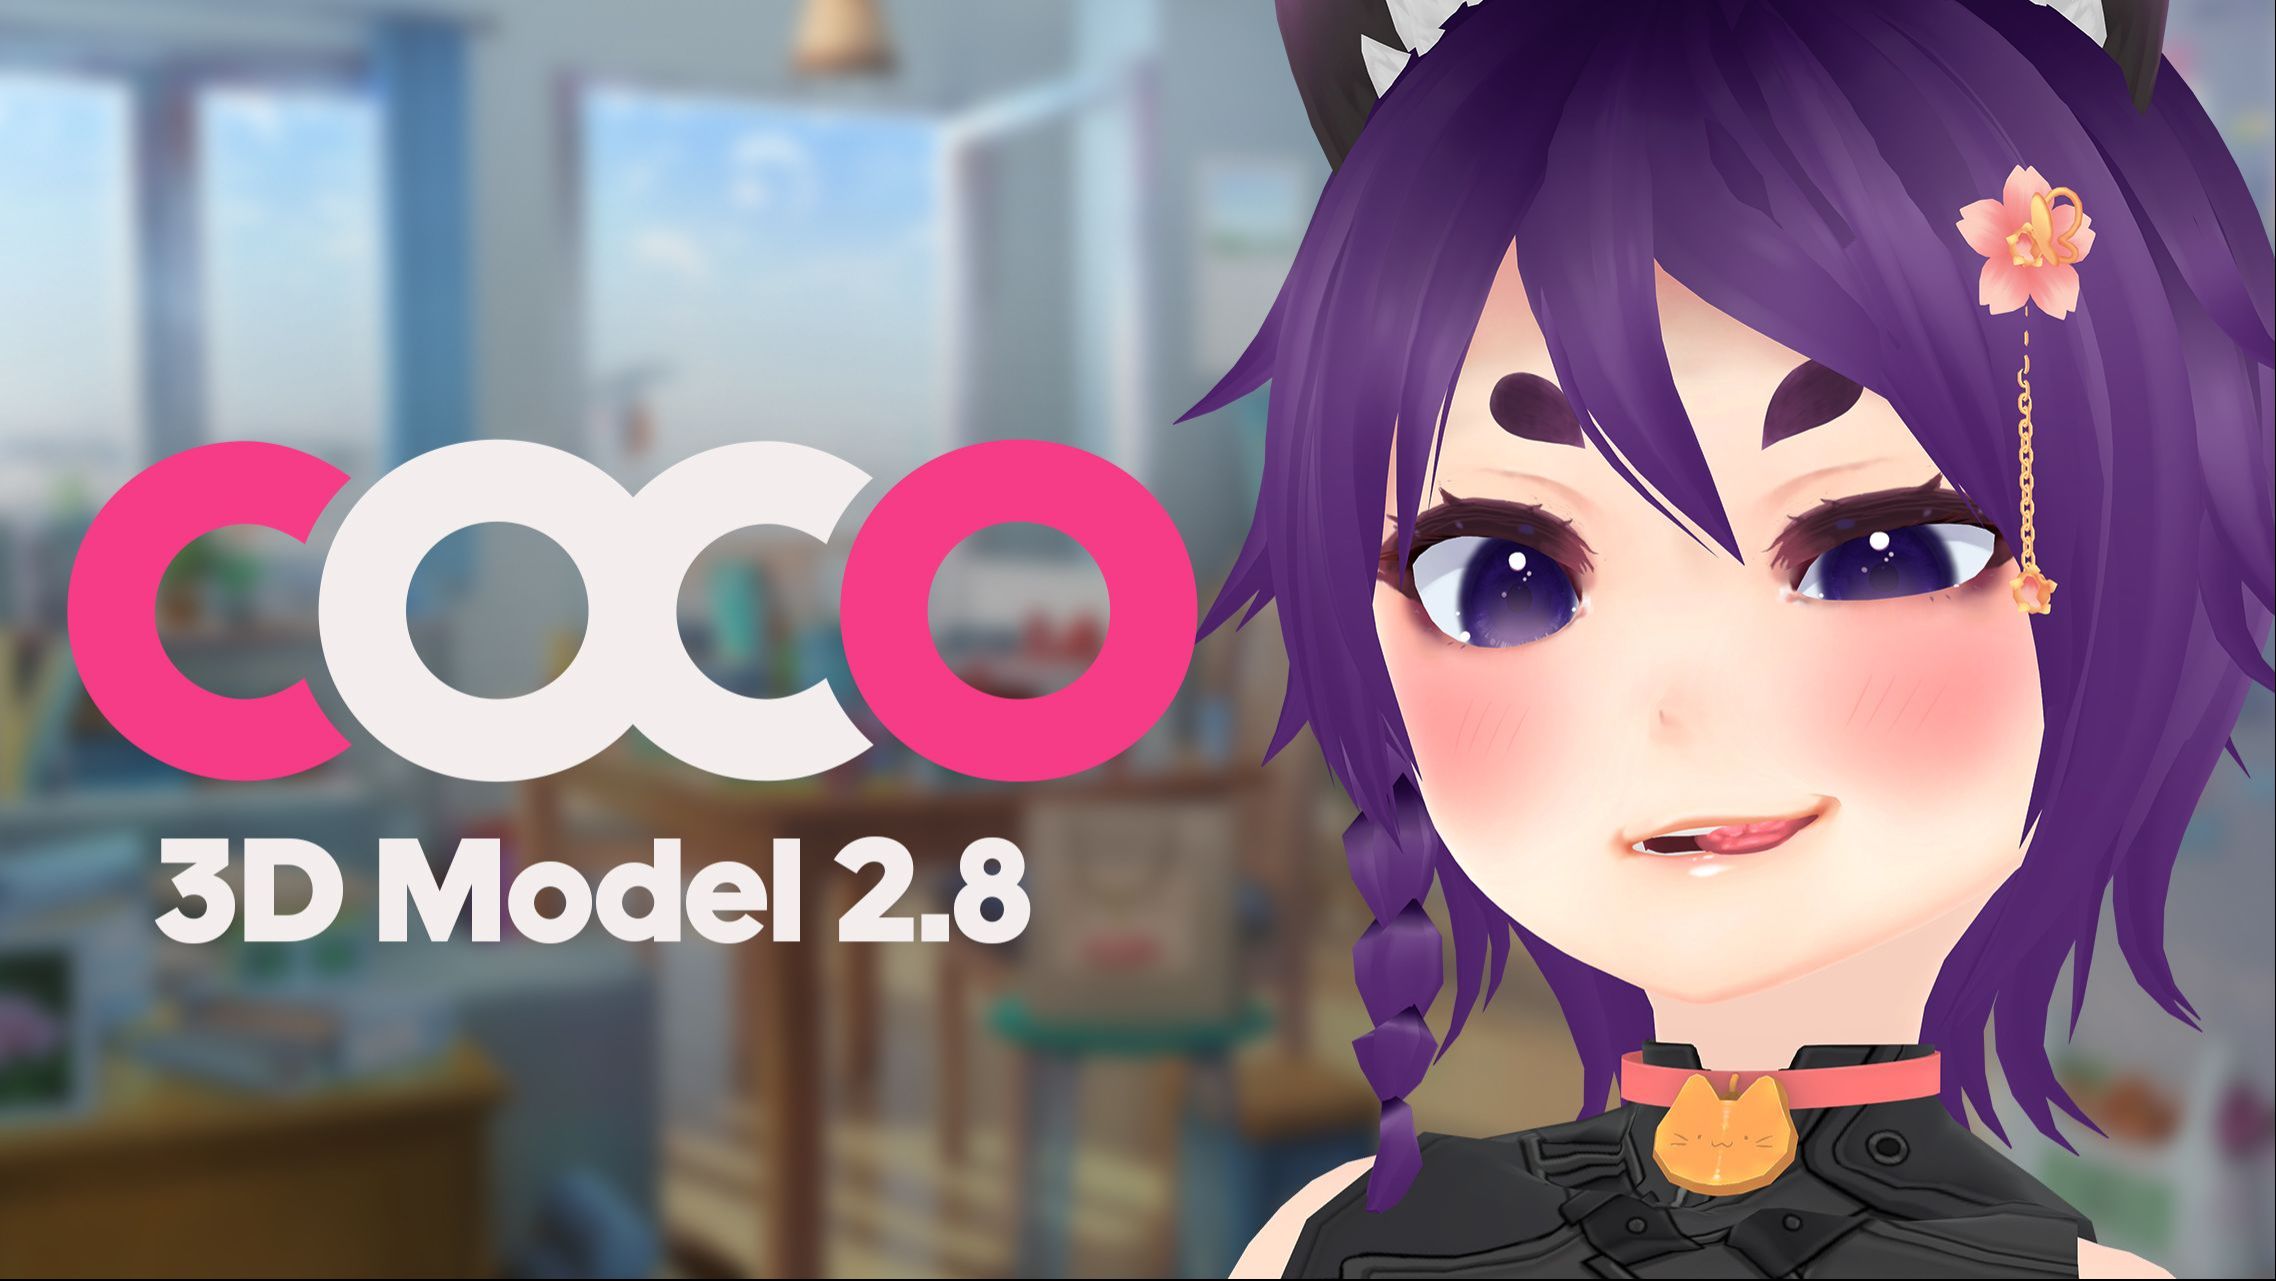 Hãy khám phá bản cập nhật mới nhất của 3D Model Coco cùng chúng tôi vào năm 2024! Đây là một trong những phiên bản đáng mong đợi nhất, với nhiều tính năng thú vị và độ chi tiết tuyệt vời. Đừng bỏ lỡ cơ hội trải nghiệm vẻ đẹp phi thực tế của Coco ngay hôm nay!